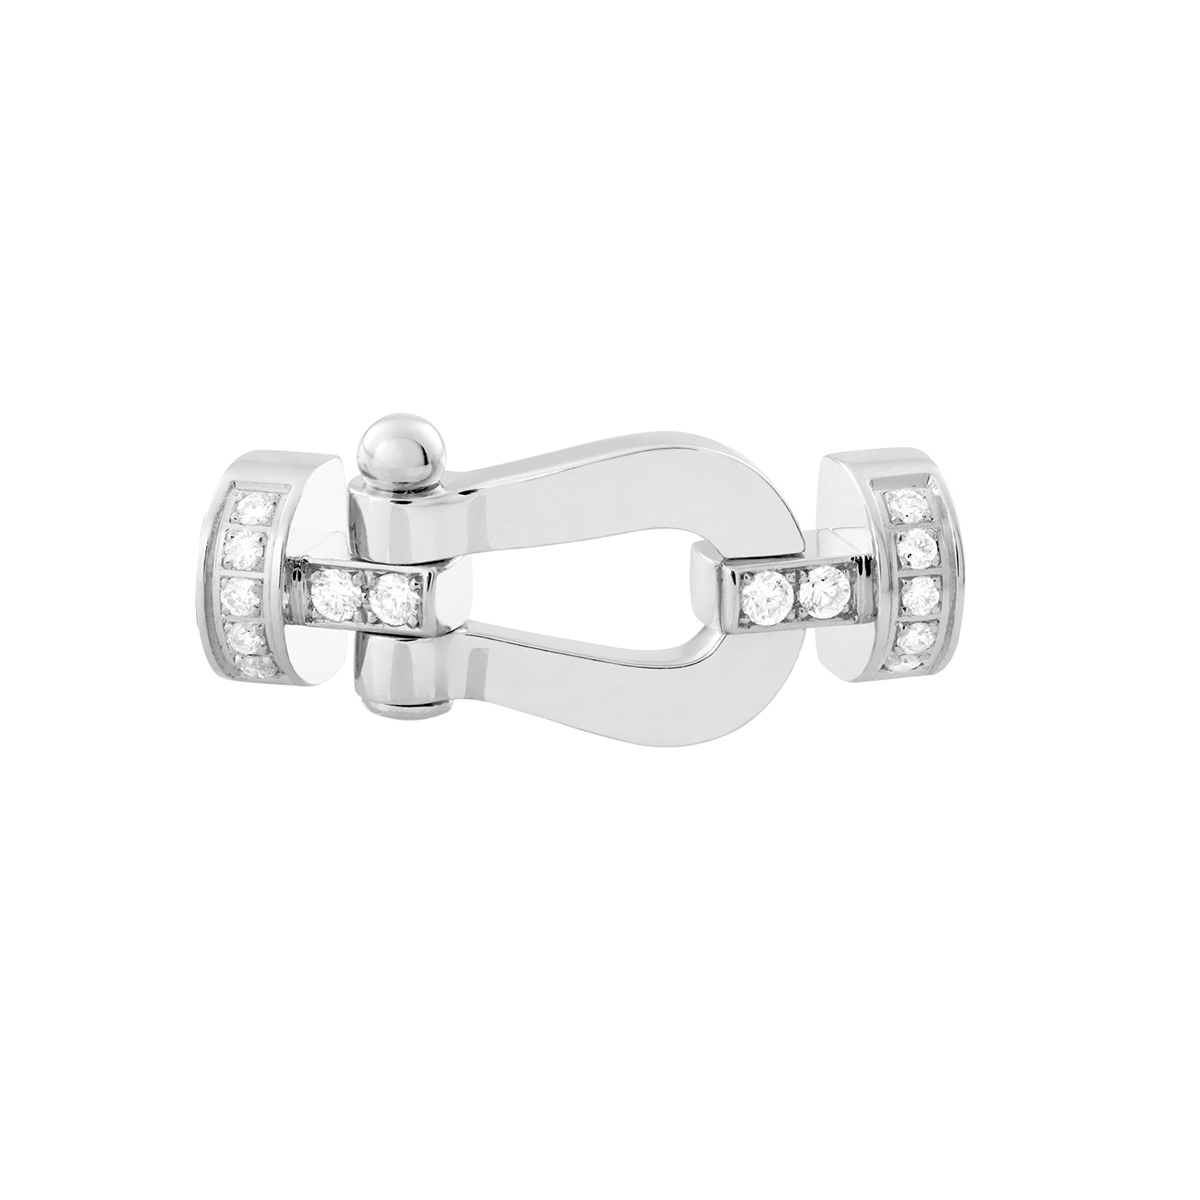 Force 10 bracelet 18k white gold and diamonds medium model - Fred